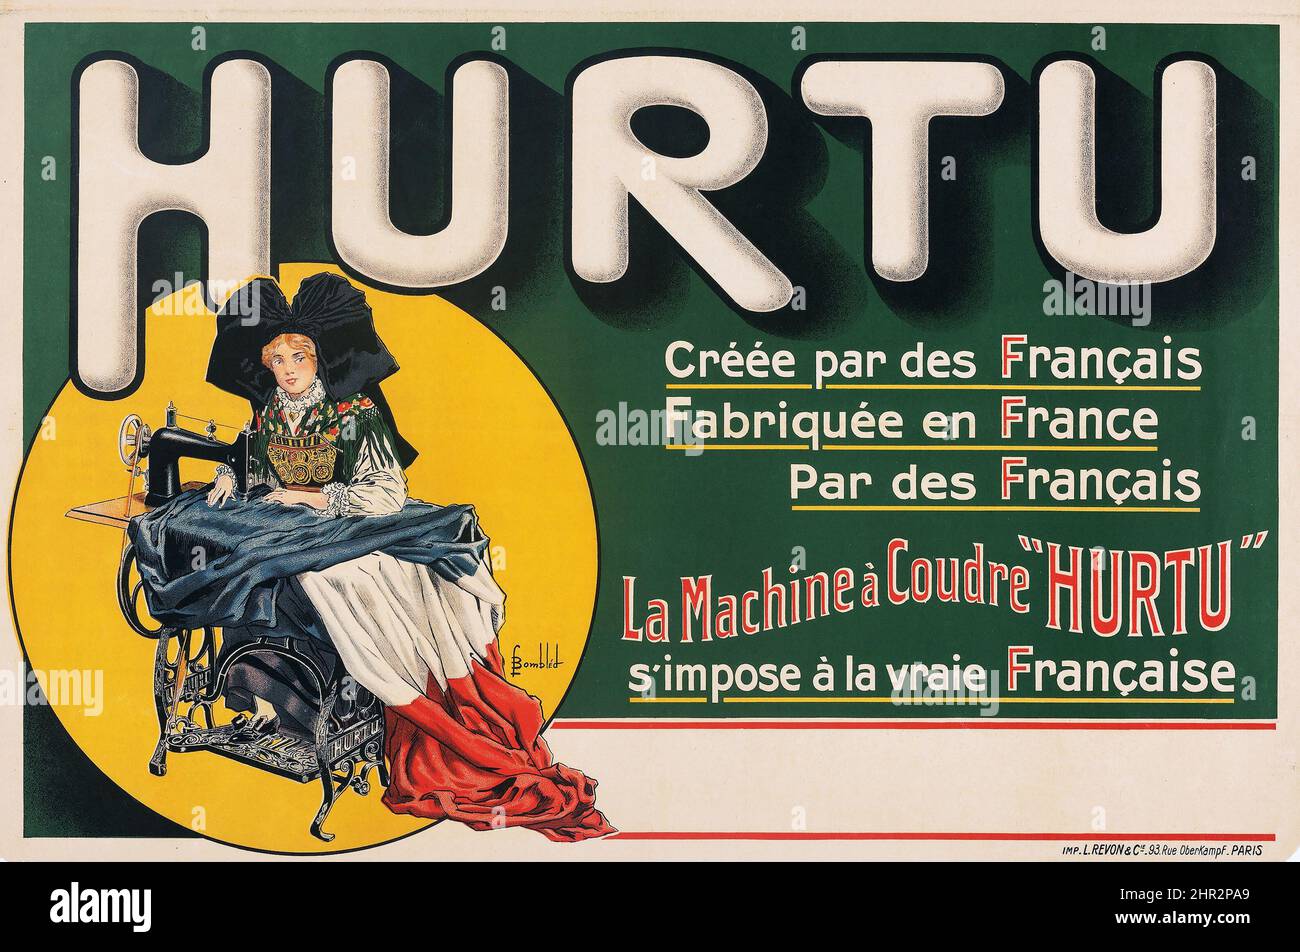 Máquinas de coser Hurtu (c. 1900). Cartel publicitario francés. Louis Bombled Artwork - póster de publicidad vintage Foto de stock